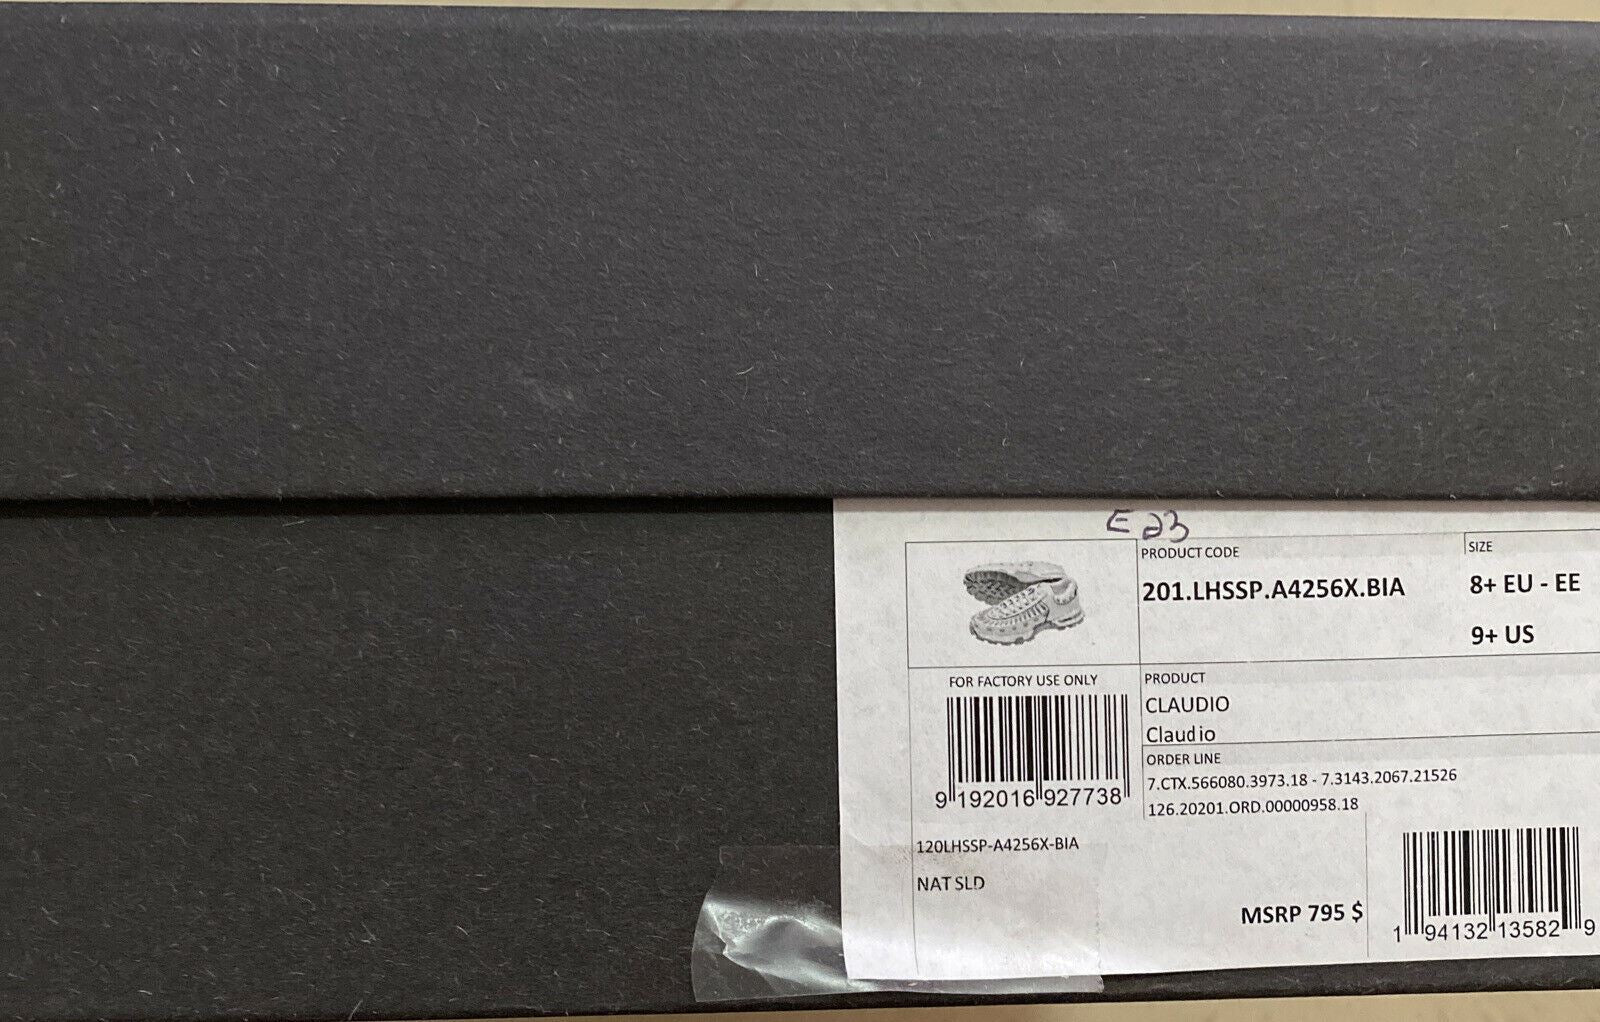 Neu $795 Ermenegildo Zegna Couture Leder-Sneakers Schuhe Weiß/Grau 9,5 US Ita